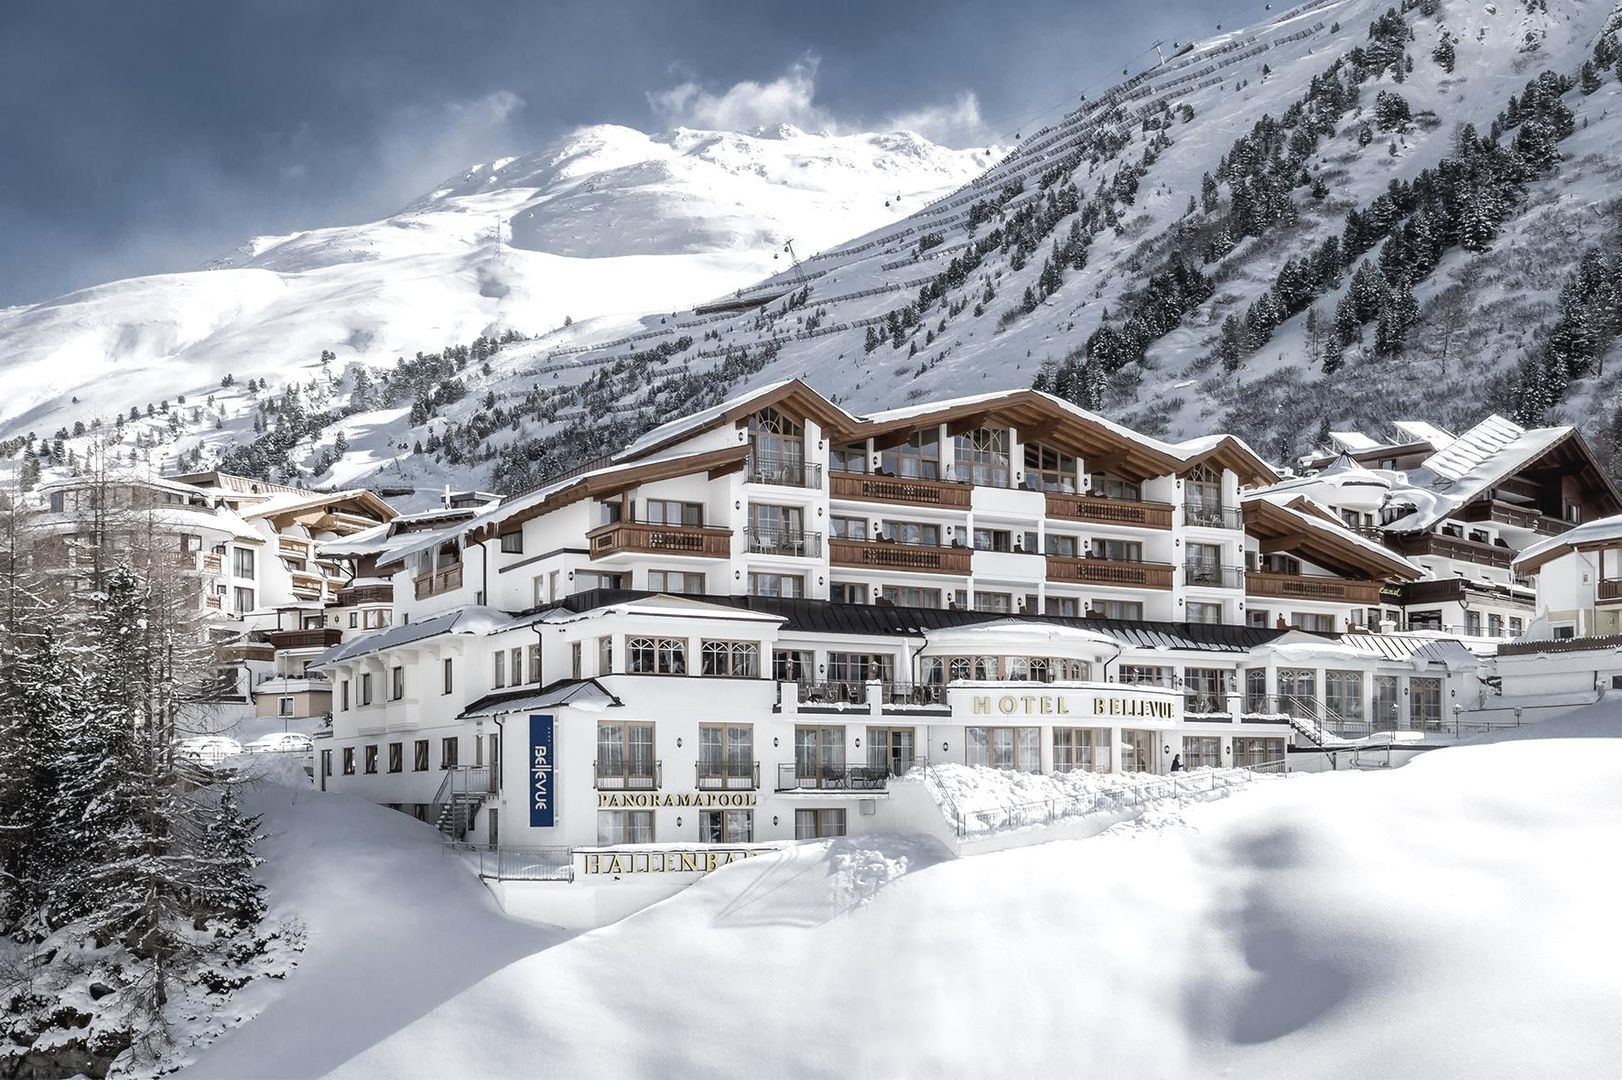 Meer info over Hotel Austria & Bellevue  bij Wintertrex